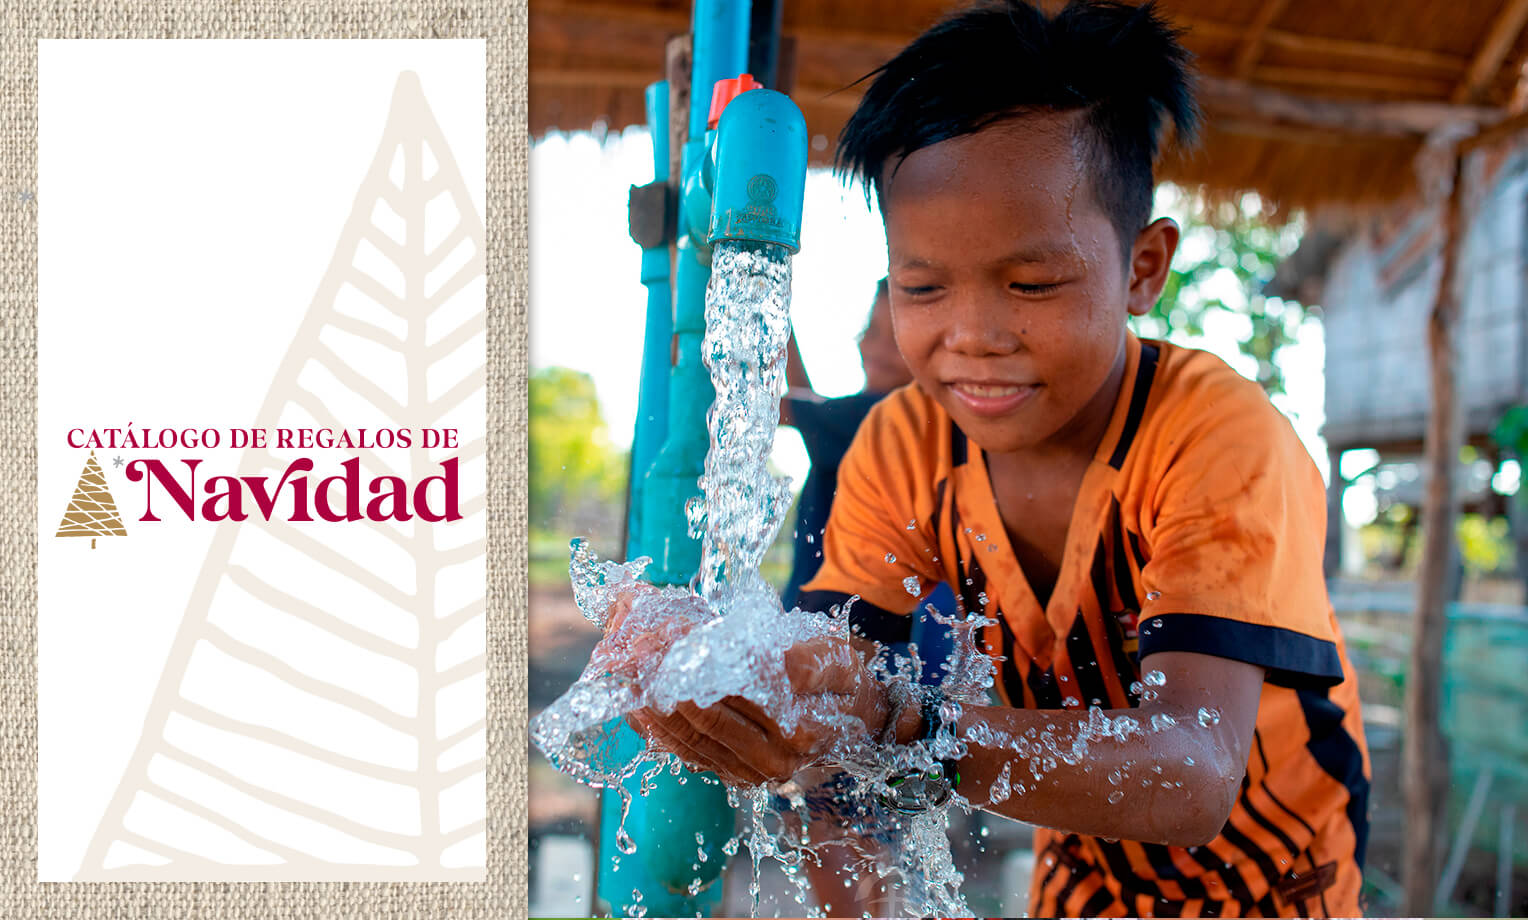 Samaritan's Purse suministra agua potable a comunidades de todo el mundo.